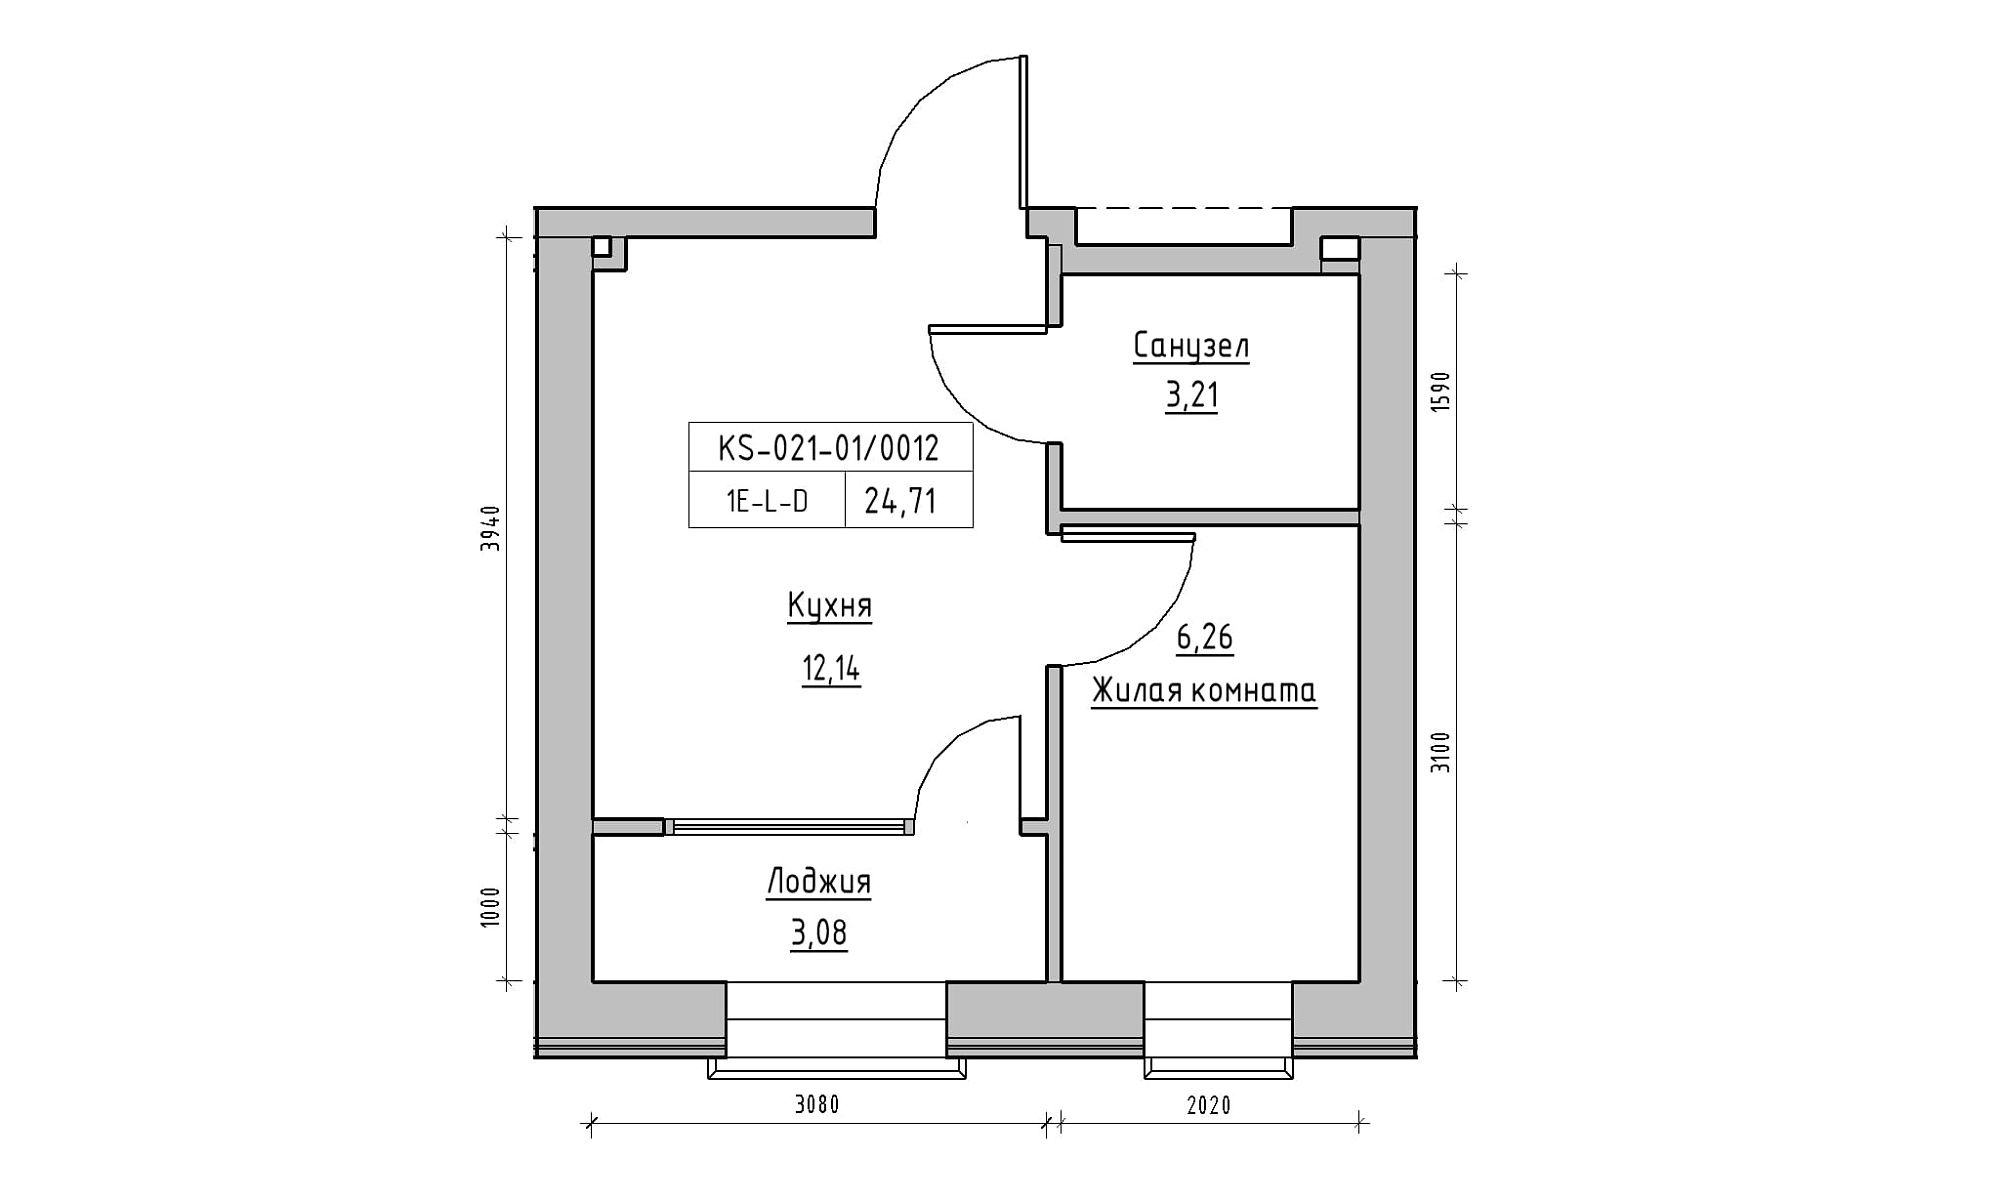 Планування 1-к квартира площею 24.71м2, KS-021-01/0012.